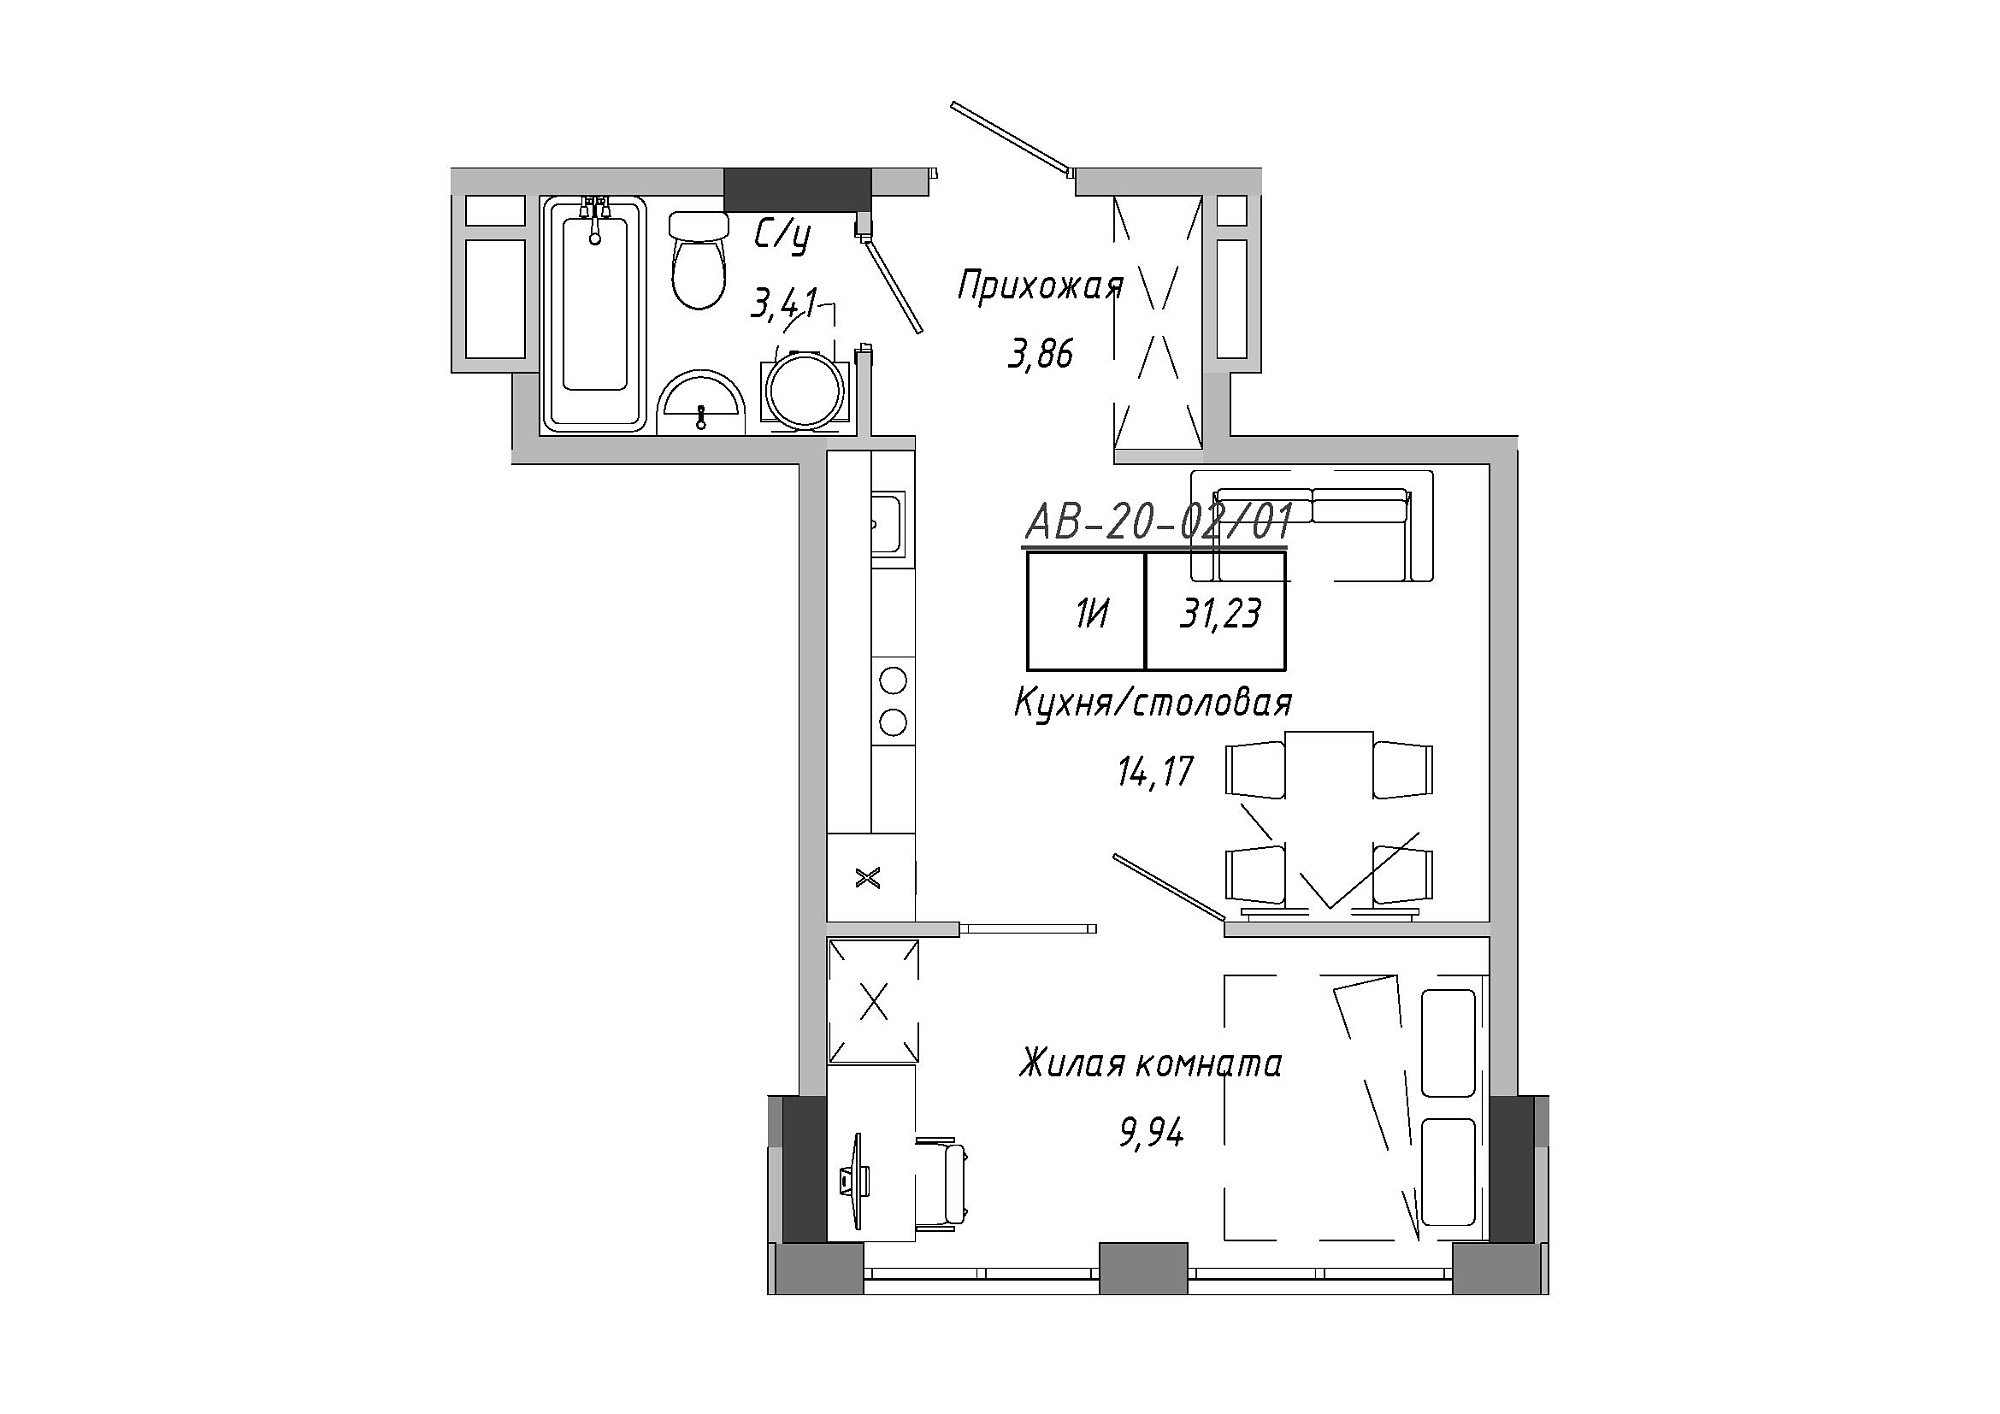 Планування 1-к квартира площею 31.23м2, AB-20-02/00001.